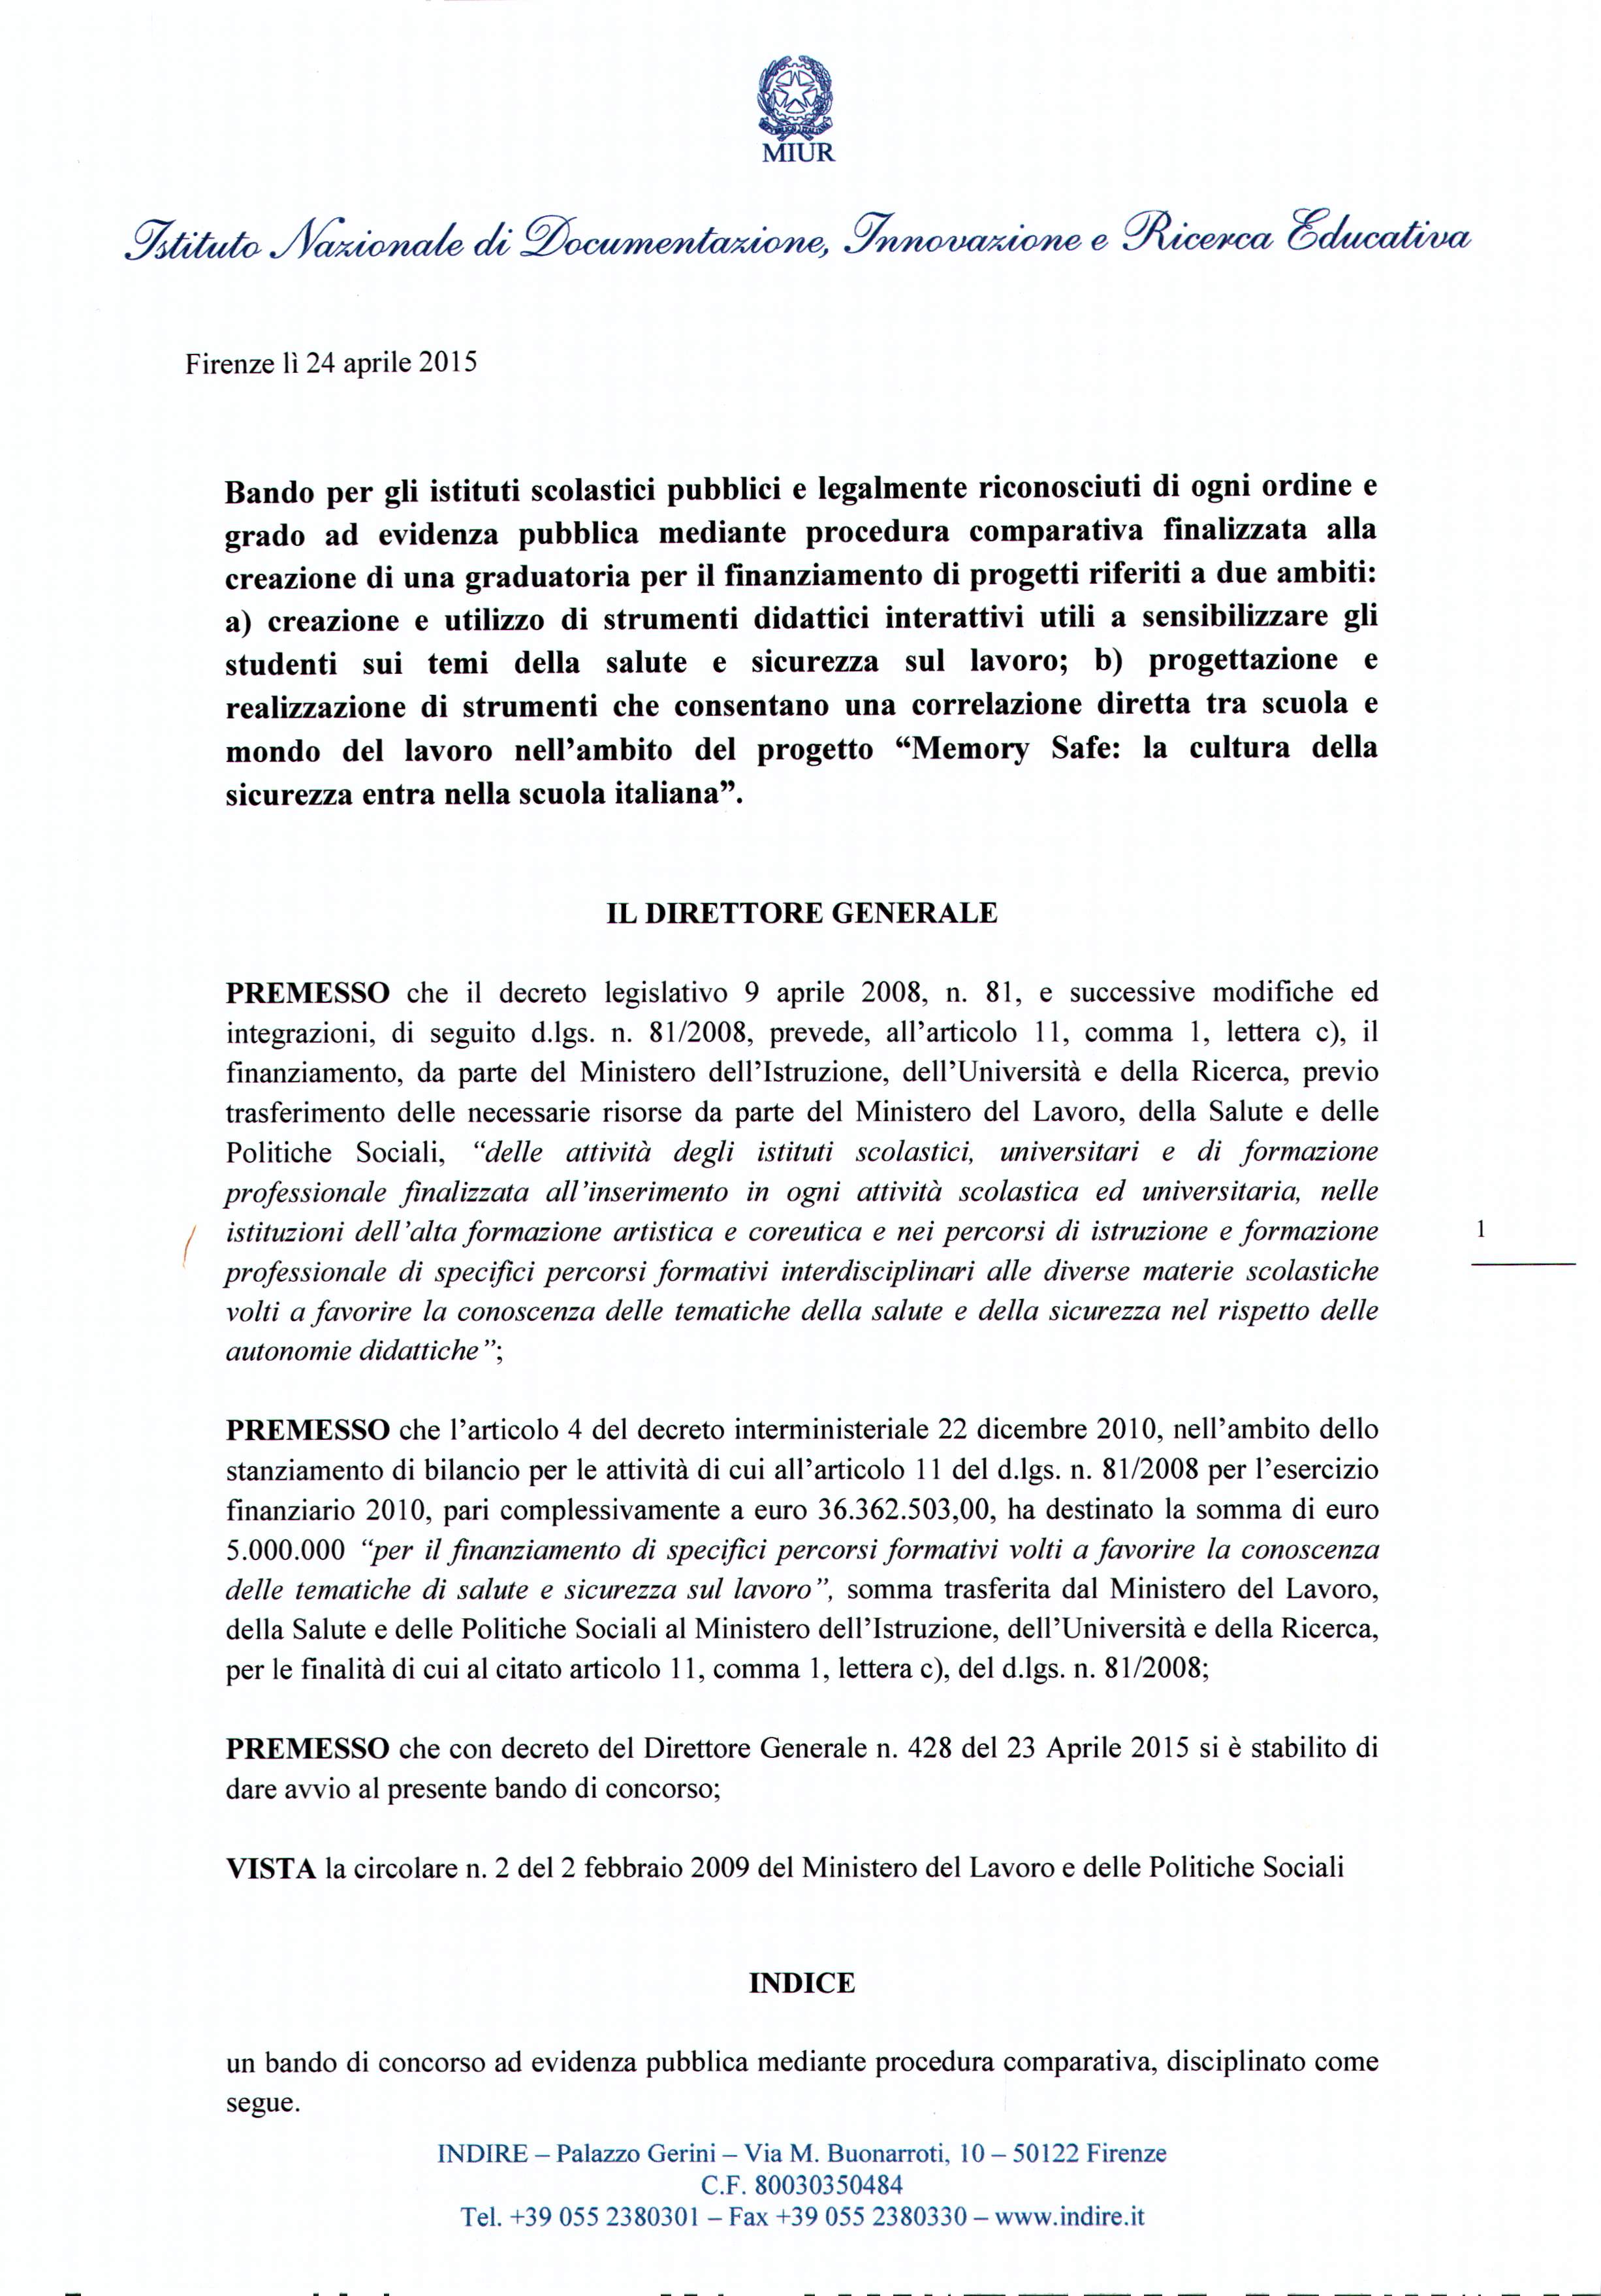 CI MIUR Firenze lì 24 aprile 2015 Bando per gli istituti scolastici pubblici e legalmente riconosciuti di ogni ordine e grado ad evidenza pubblica mediante procedura comparativa finalizzata alla